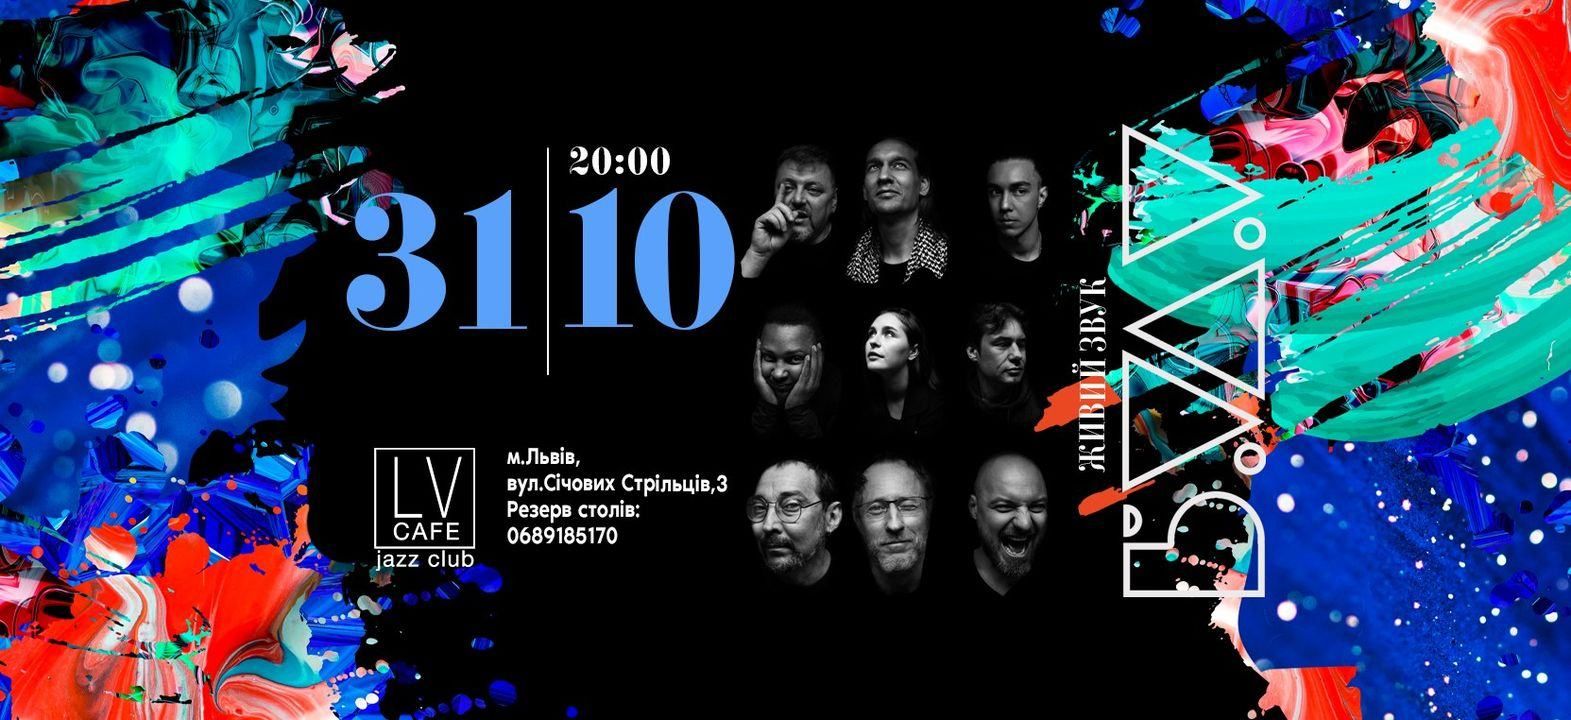 Известный киевский джаз-бэнд BUDU выступит во Львове: дата концерта - Украина новости - Афиша